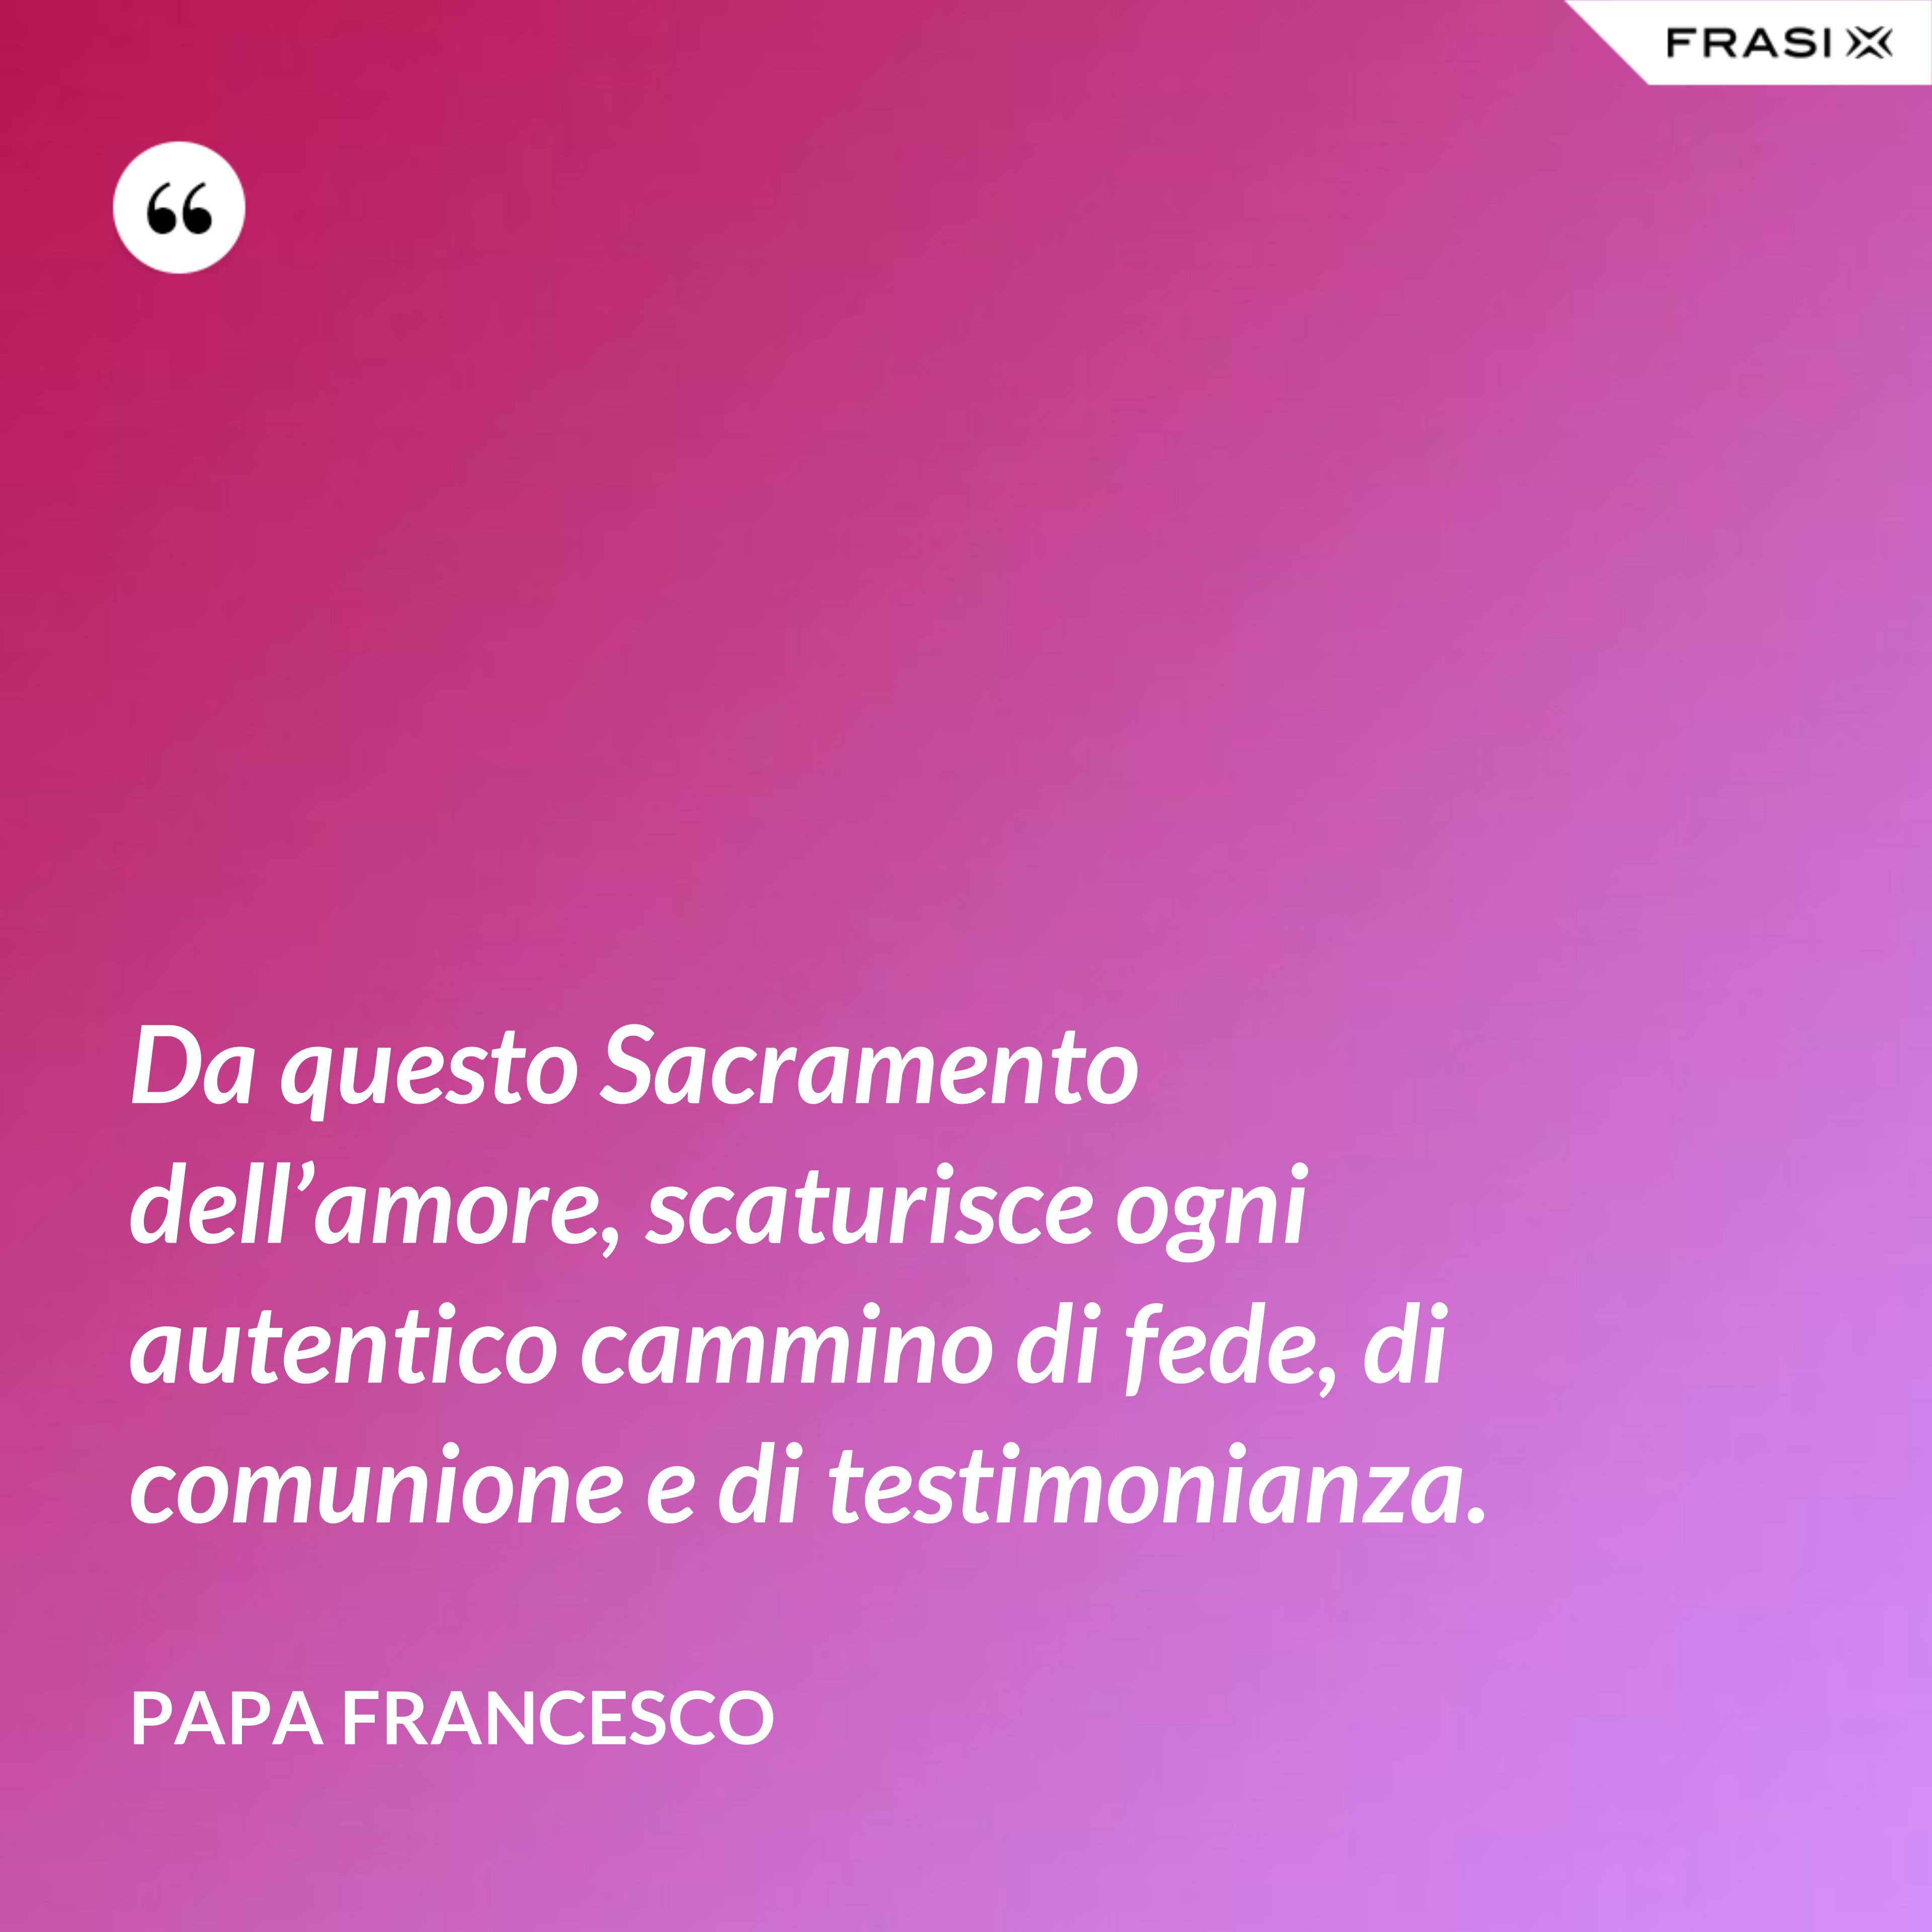 Da questo Sacramento dell’amore, scaturisce ogni autentico cammino di fede, di comunione e di testimonianza. - Papa Francesco